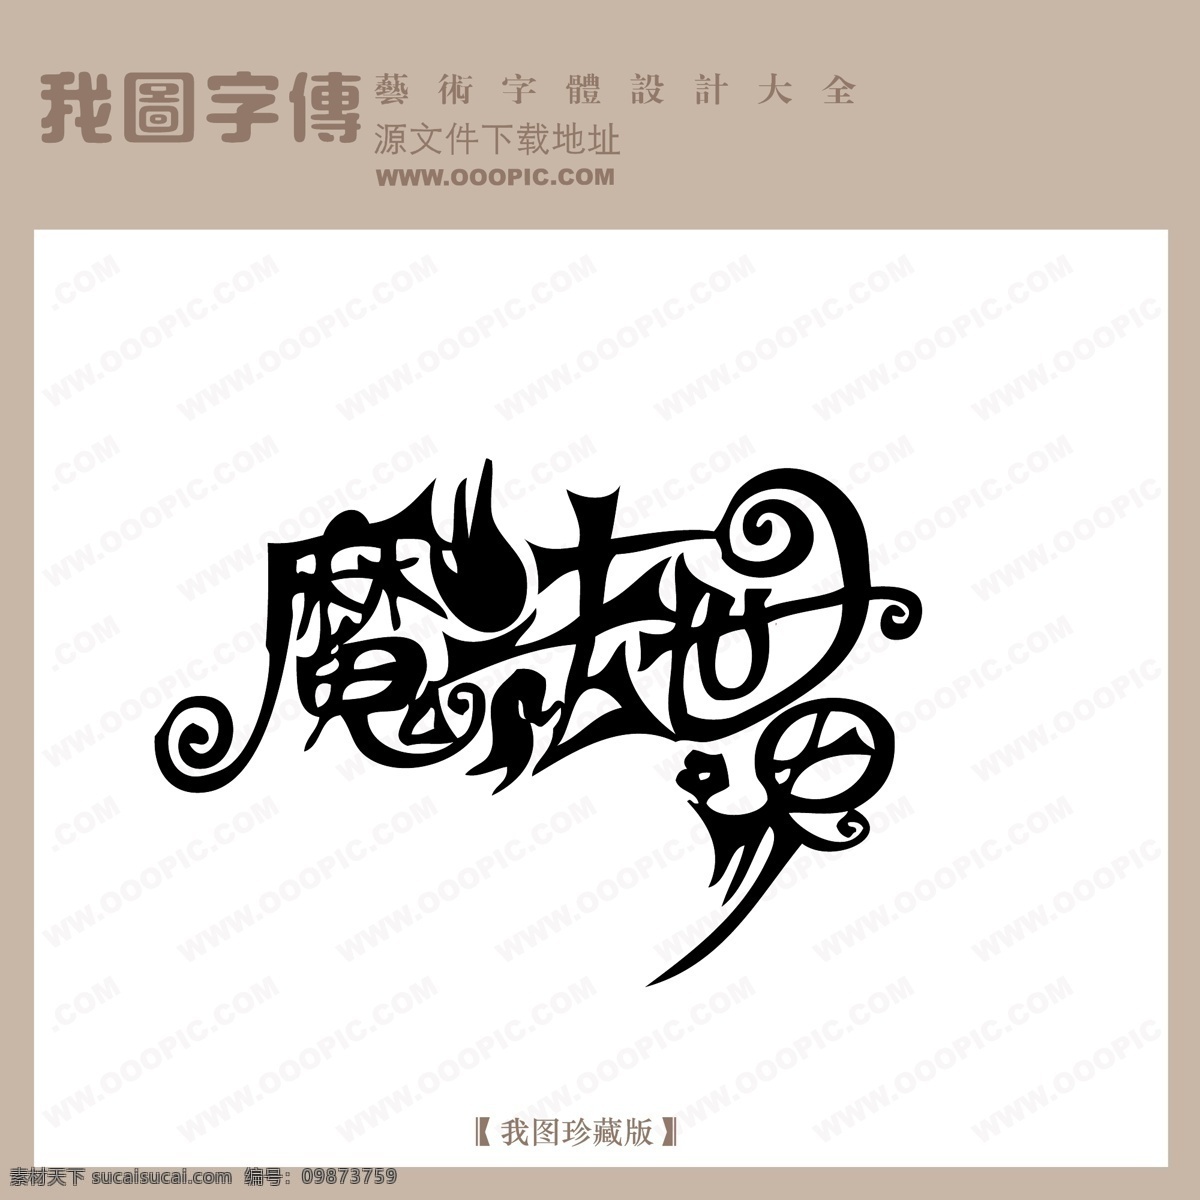 魔法世界 中文 现代艺术 字 创意 美工 艺术 中国字体下载 矢量图